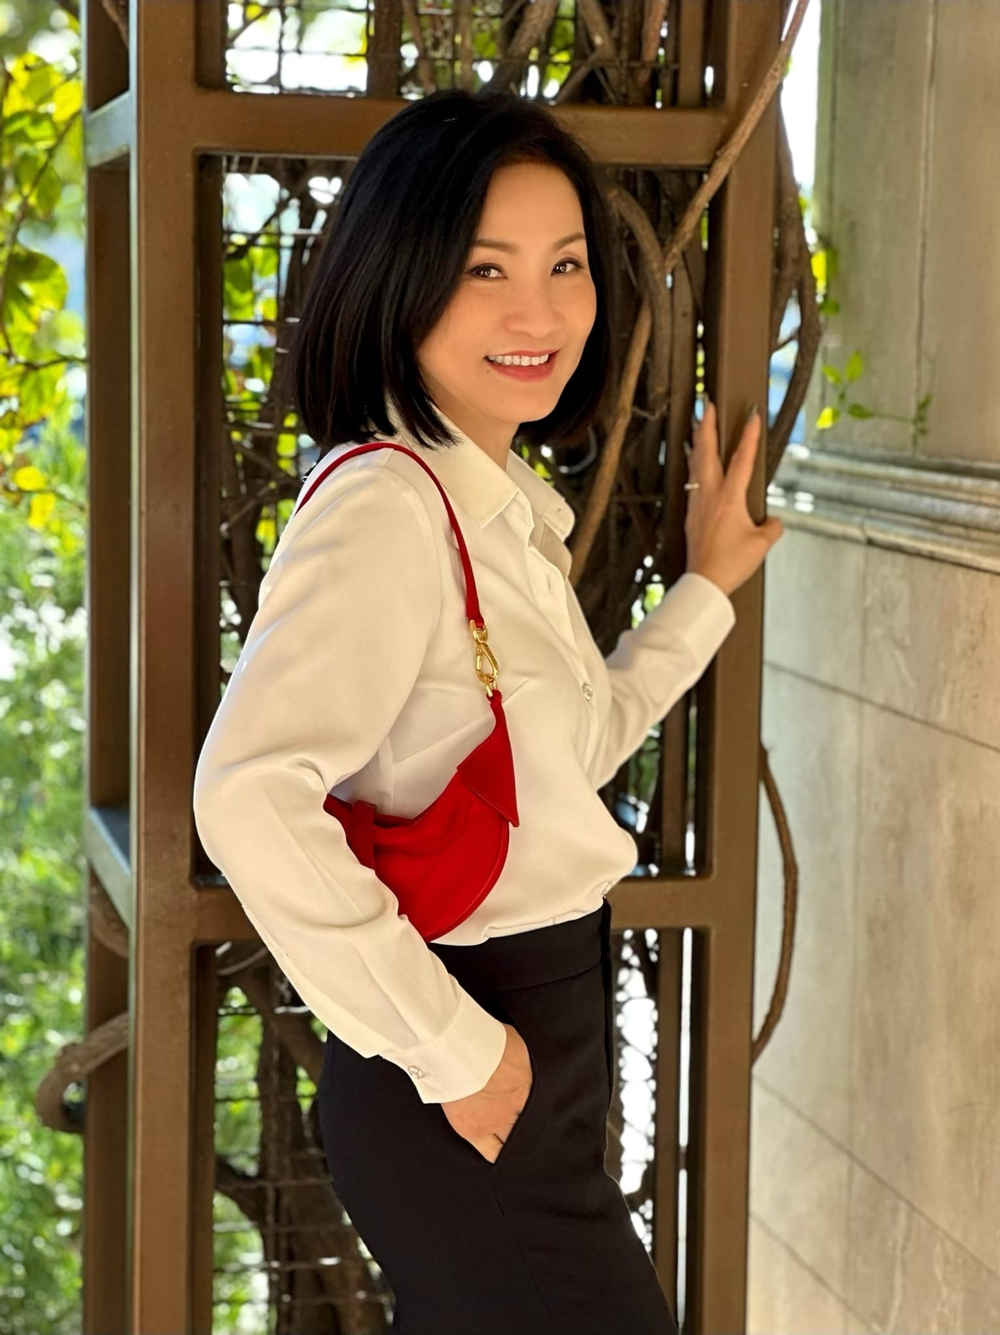 Nữ diễn viên người Việt xuất hiện trên phim Hollywood: Hôn nhân tan vỡ sau 20 năm đồng cam cộng khổ, cuộc sống hiện tại đầy bất ngờ - Ảnh 7.